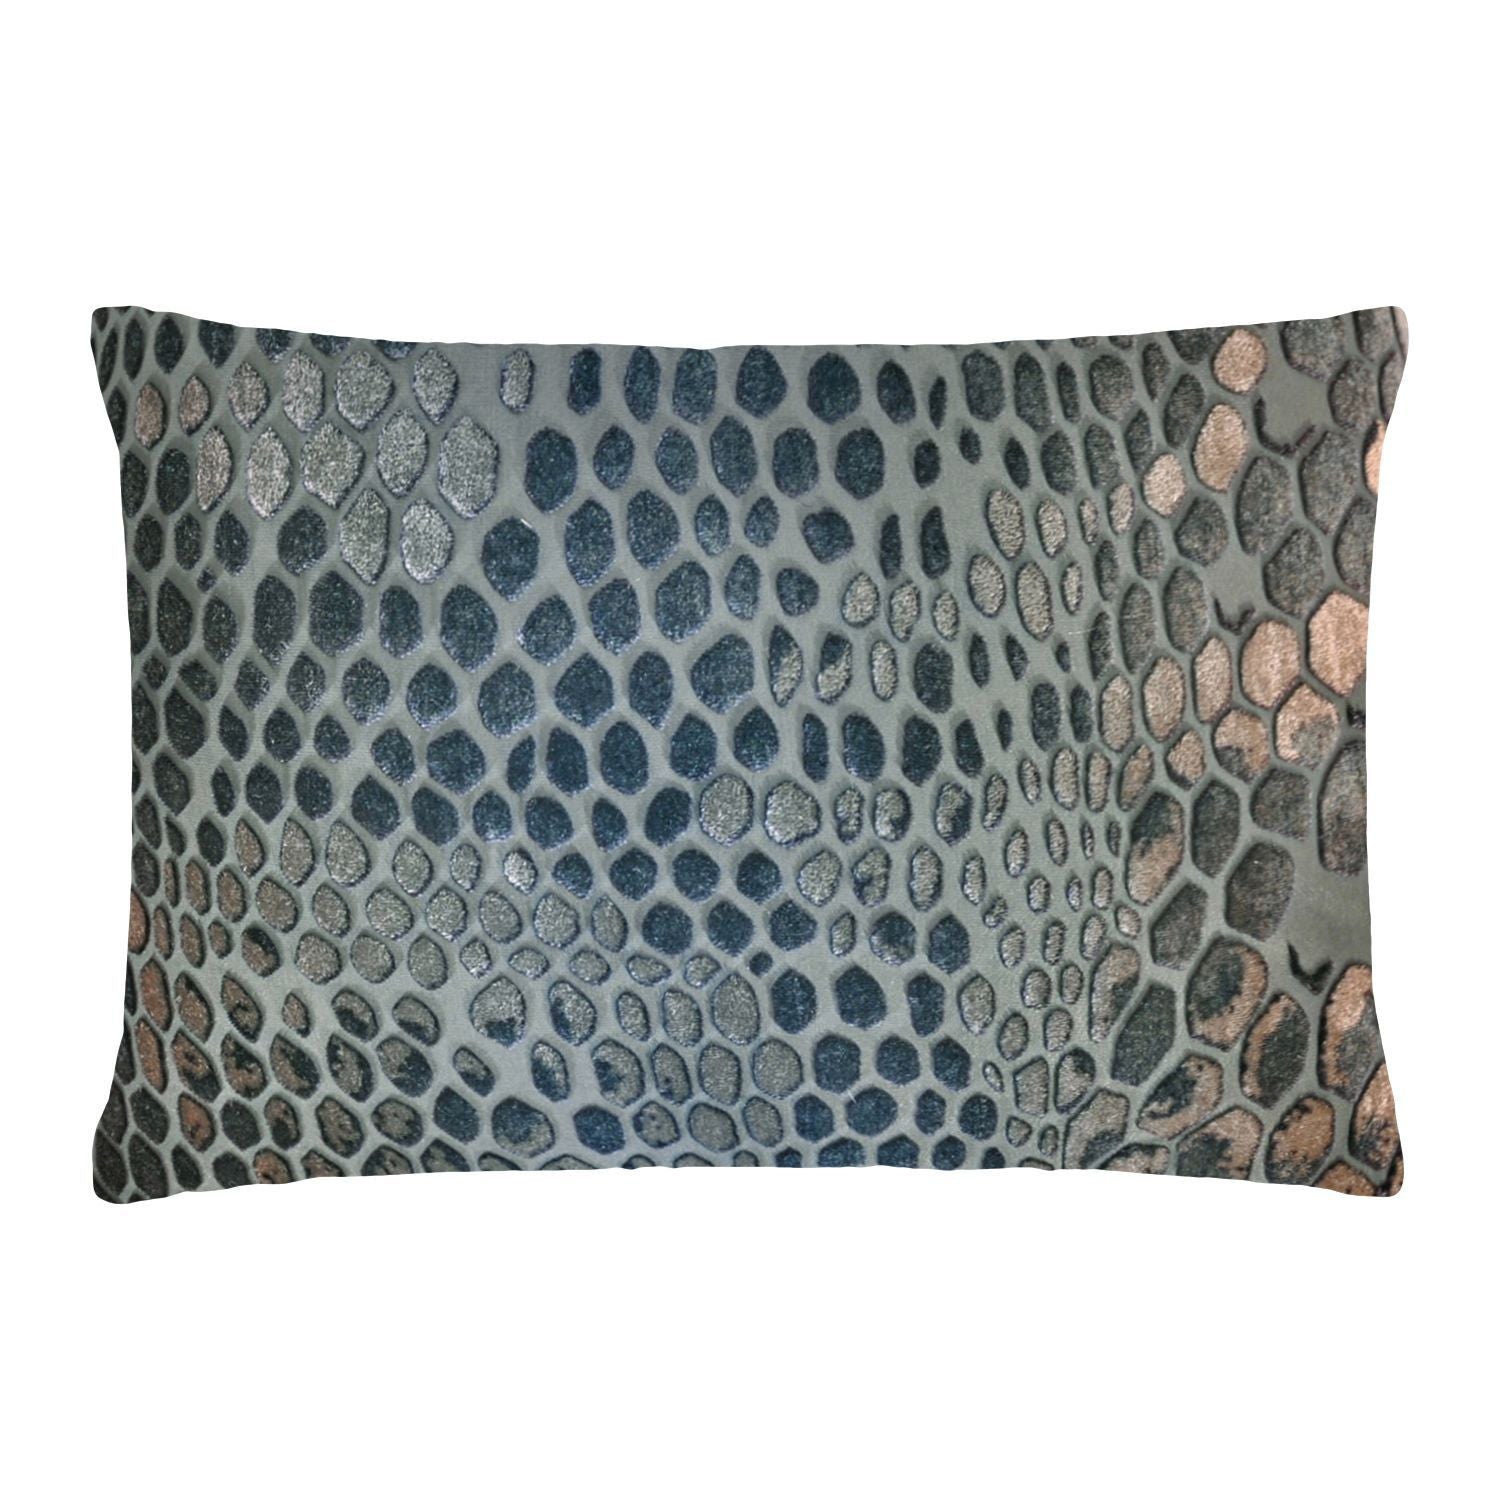 Kevin O'Brien Studio Snakeskin Velvet Pillows in Gunmetal | Fig Linens